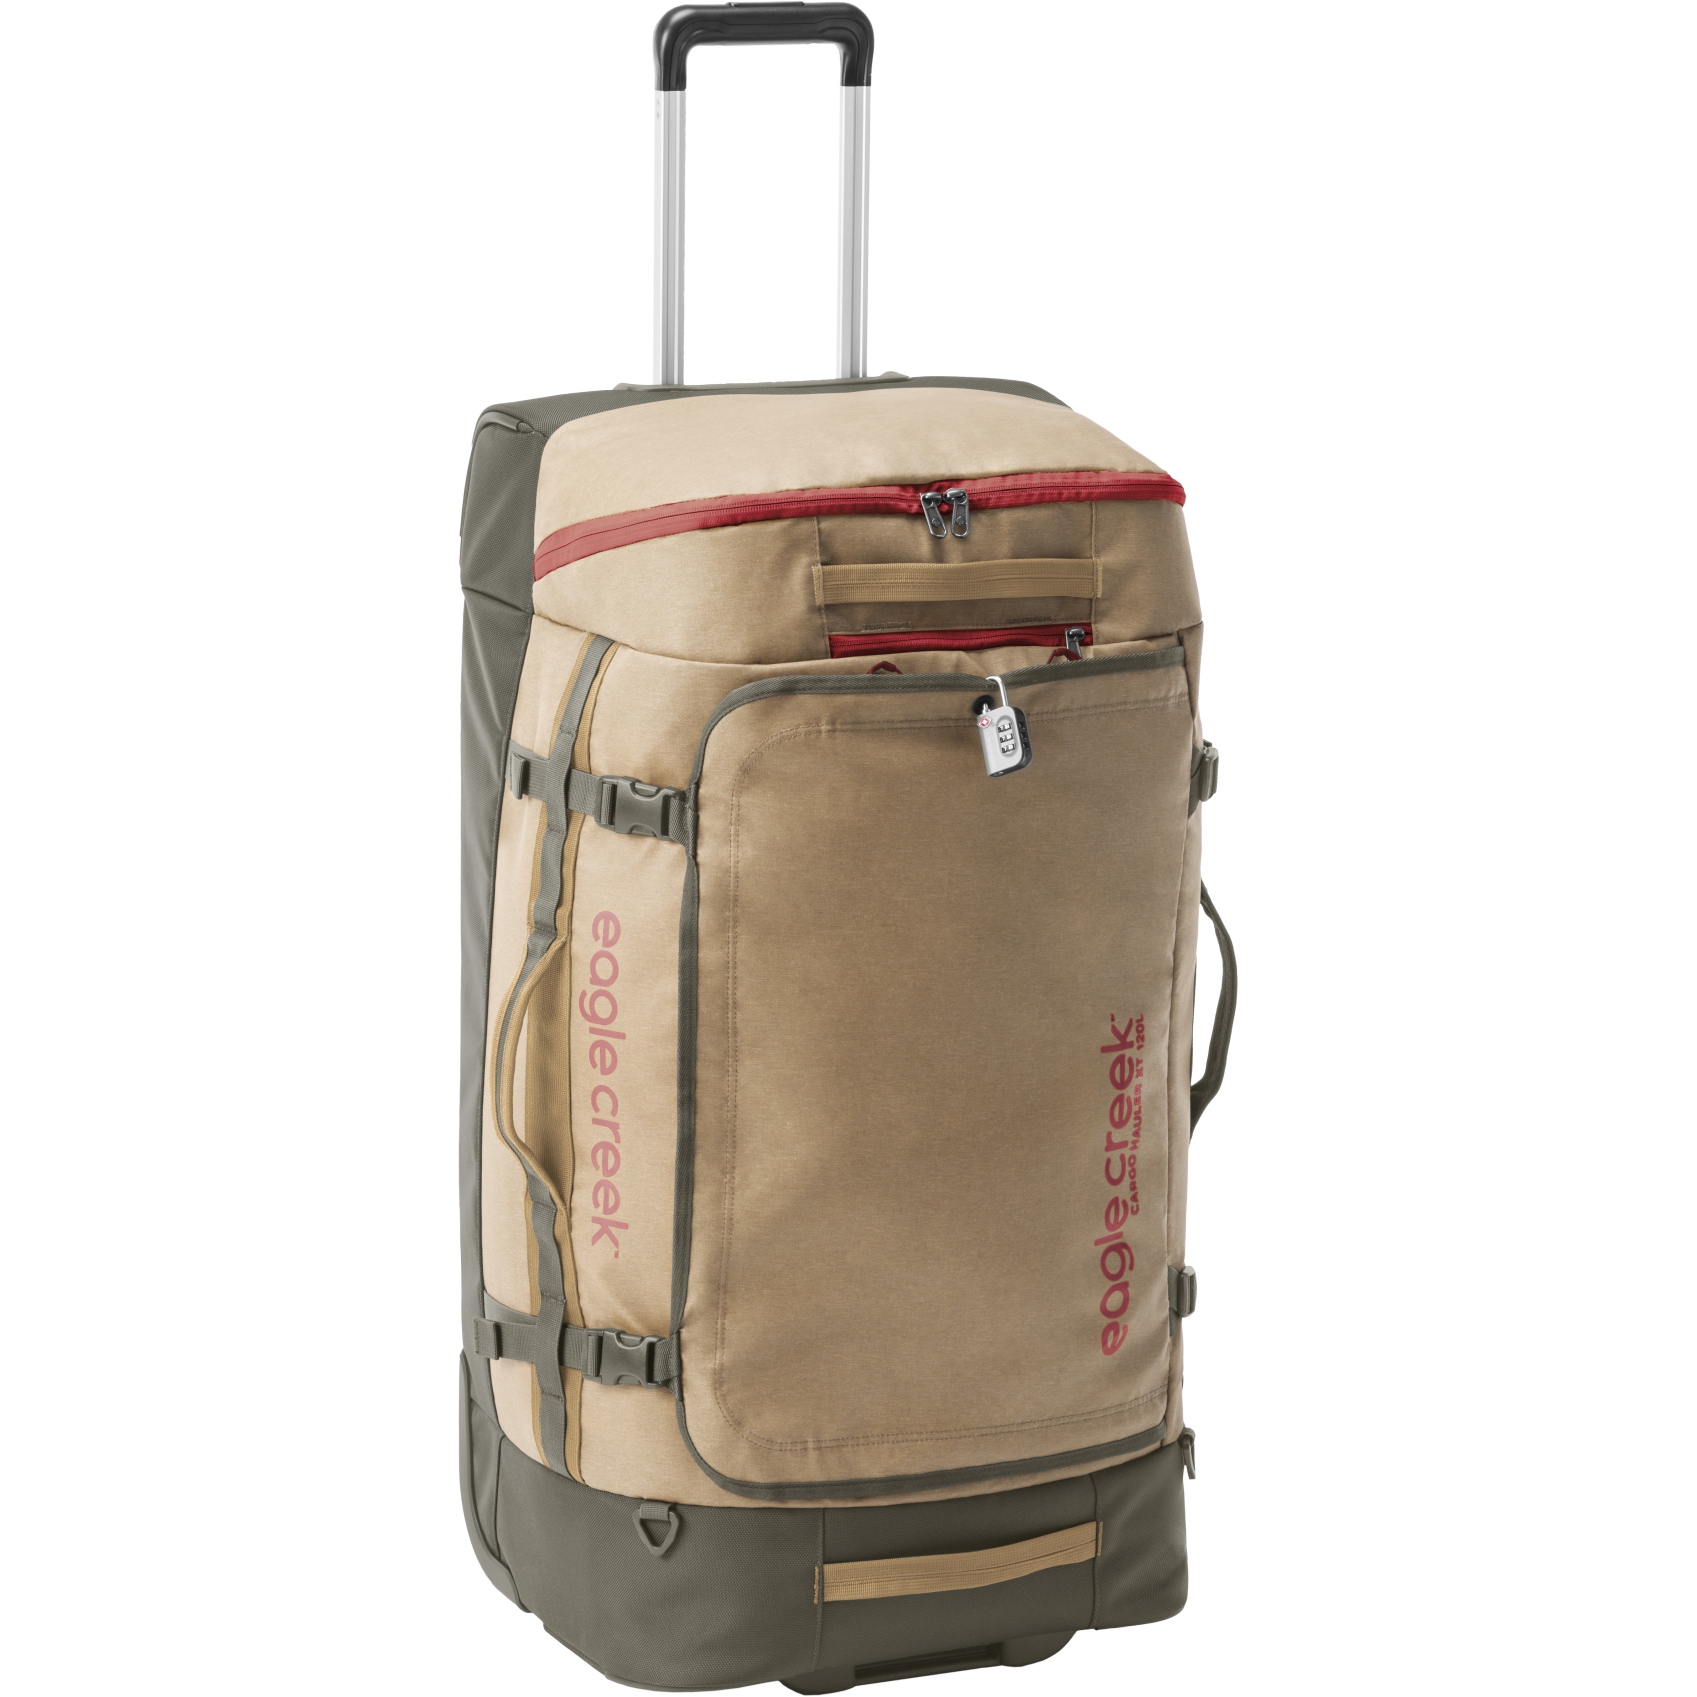 Produktbild von Eagle Creek Cargo Hauler XT Reisetasche mit Rollen - 120L - safari brown